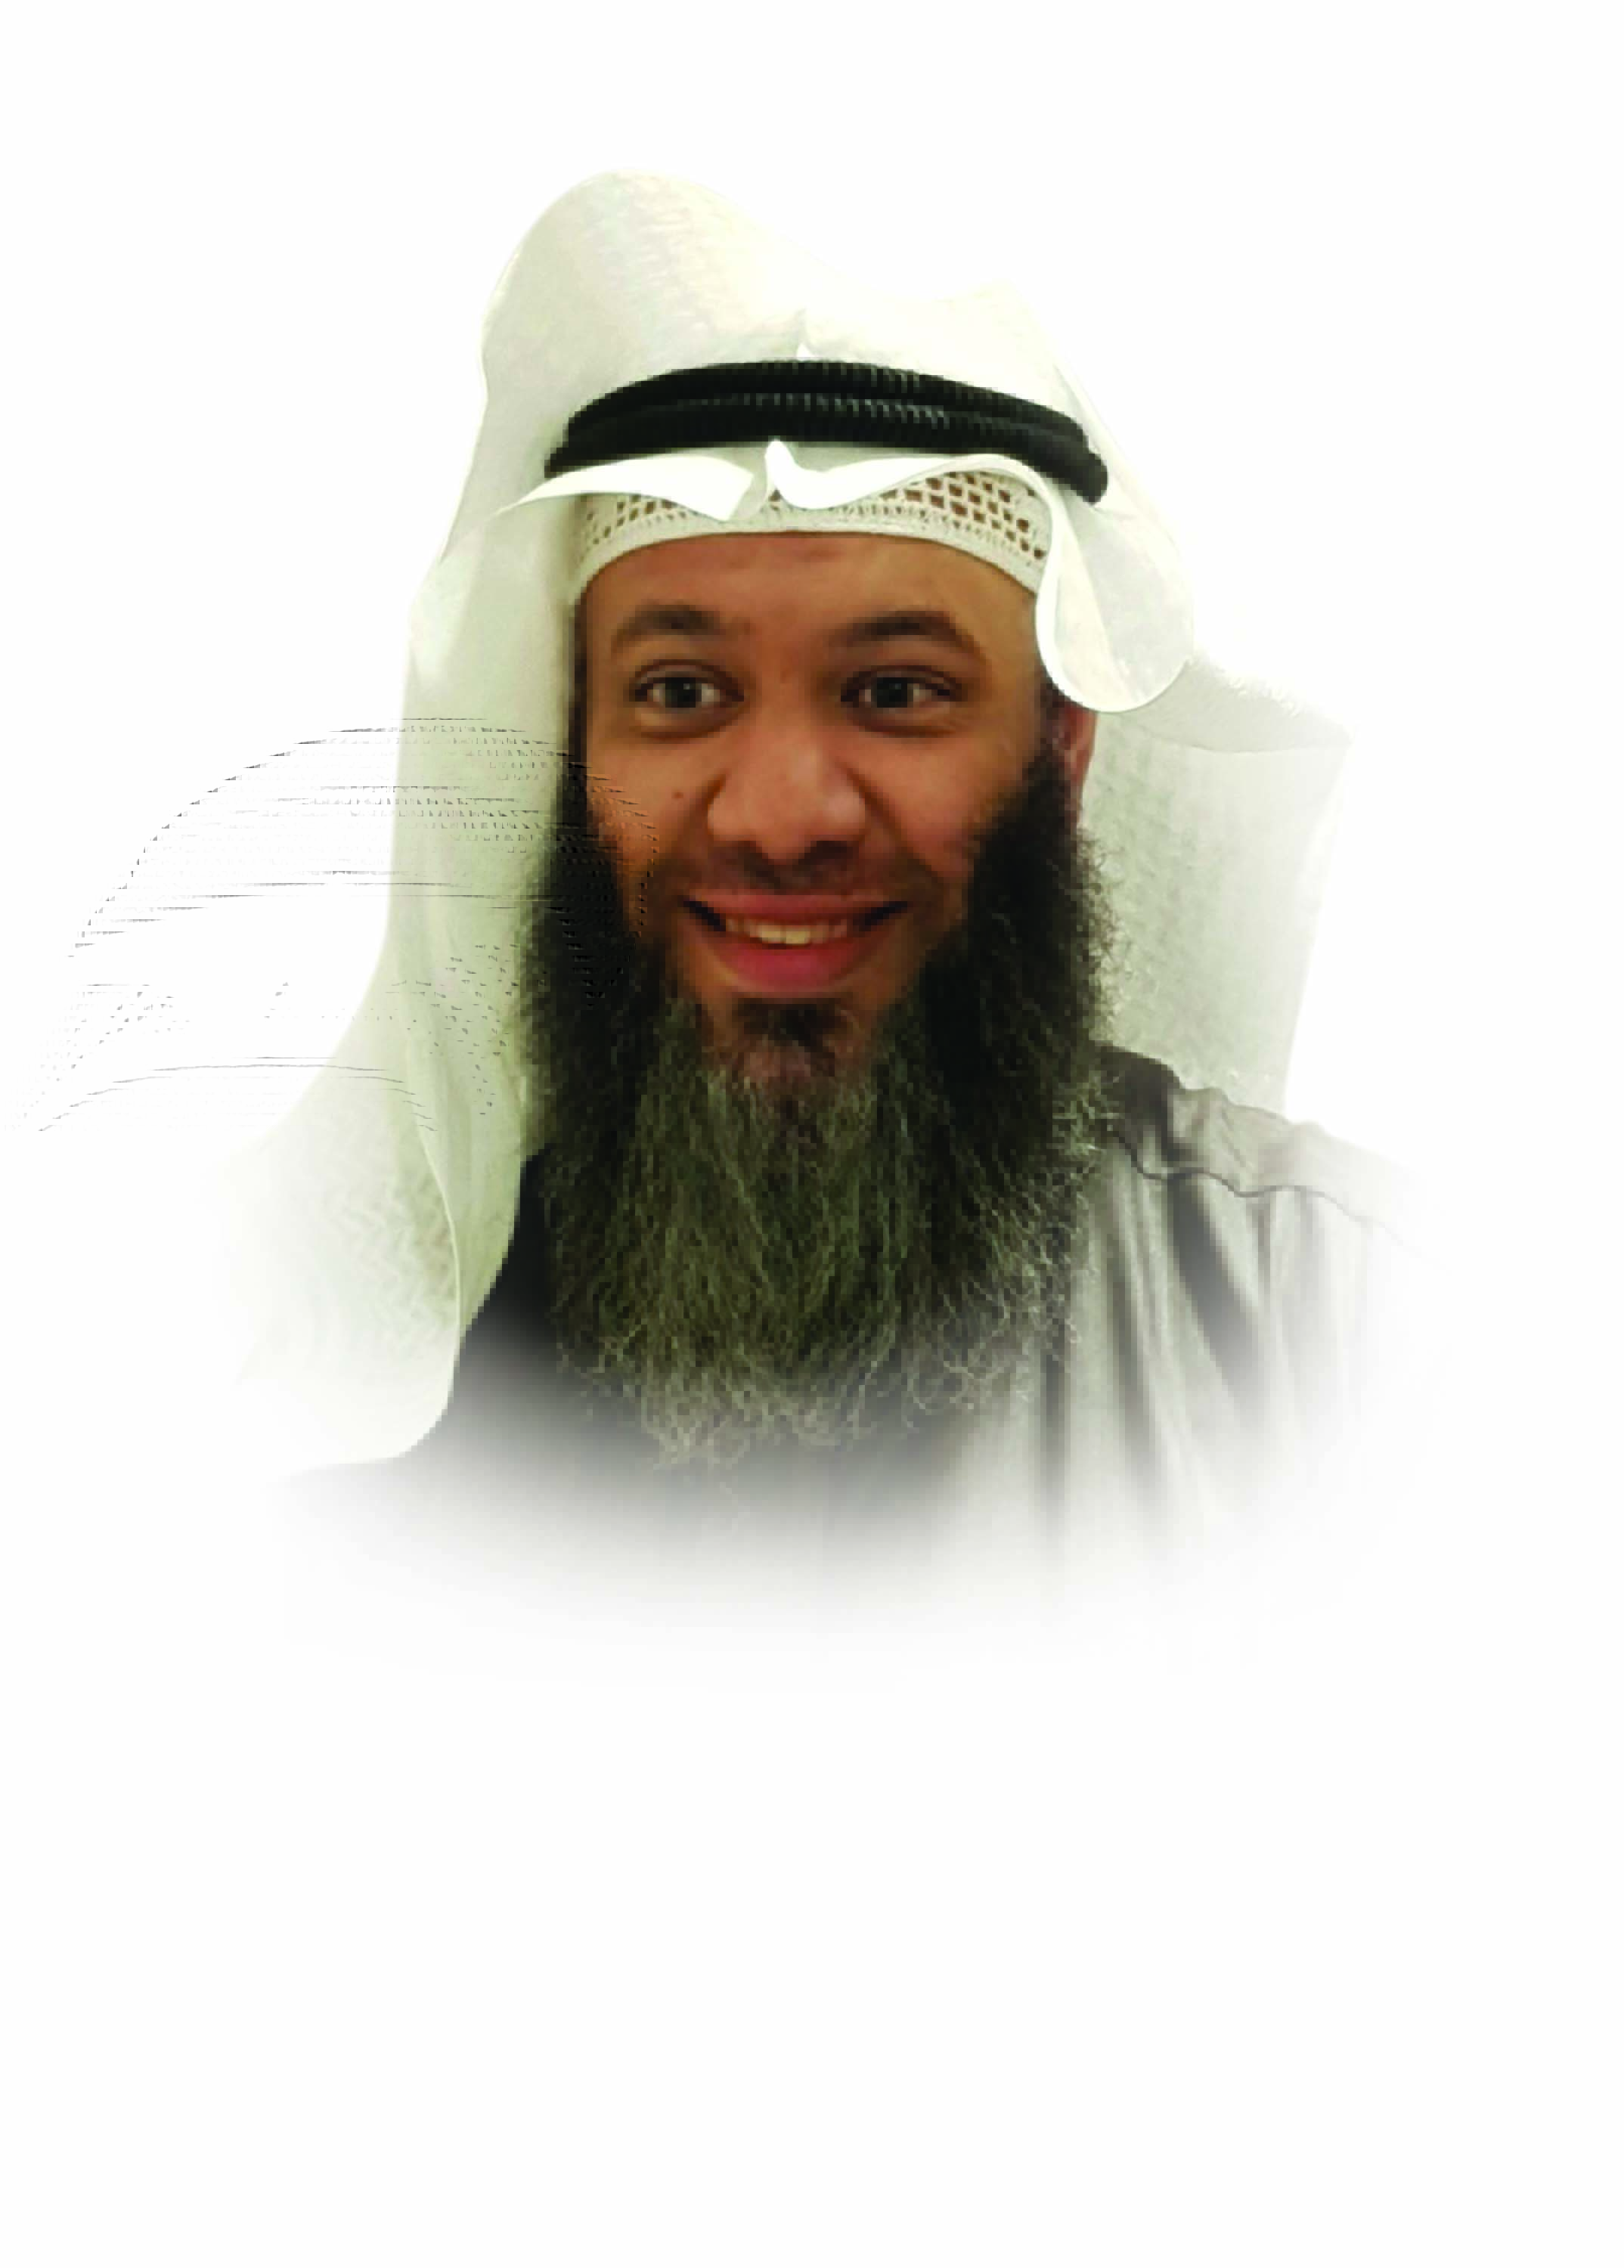  د. عبدالعزيز بن إبراهيم الشريدة